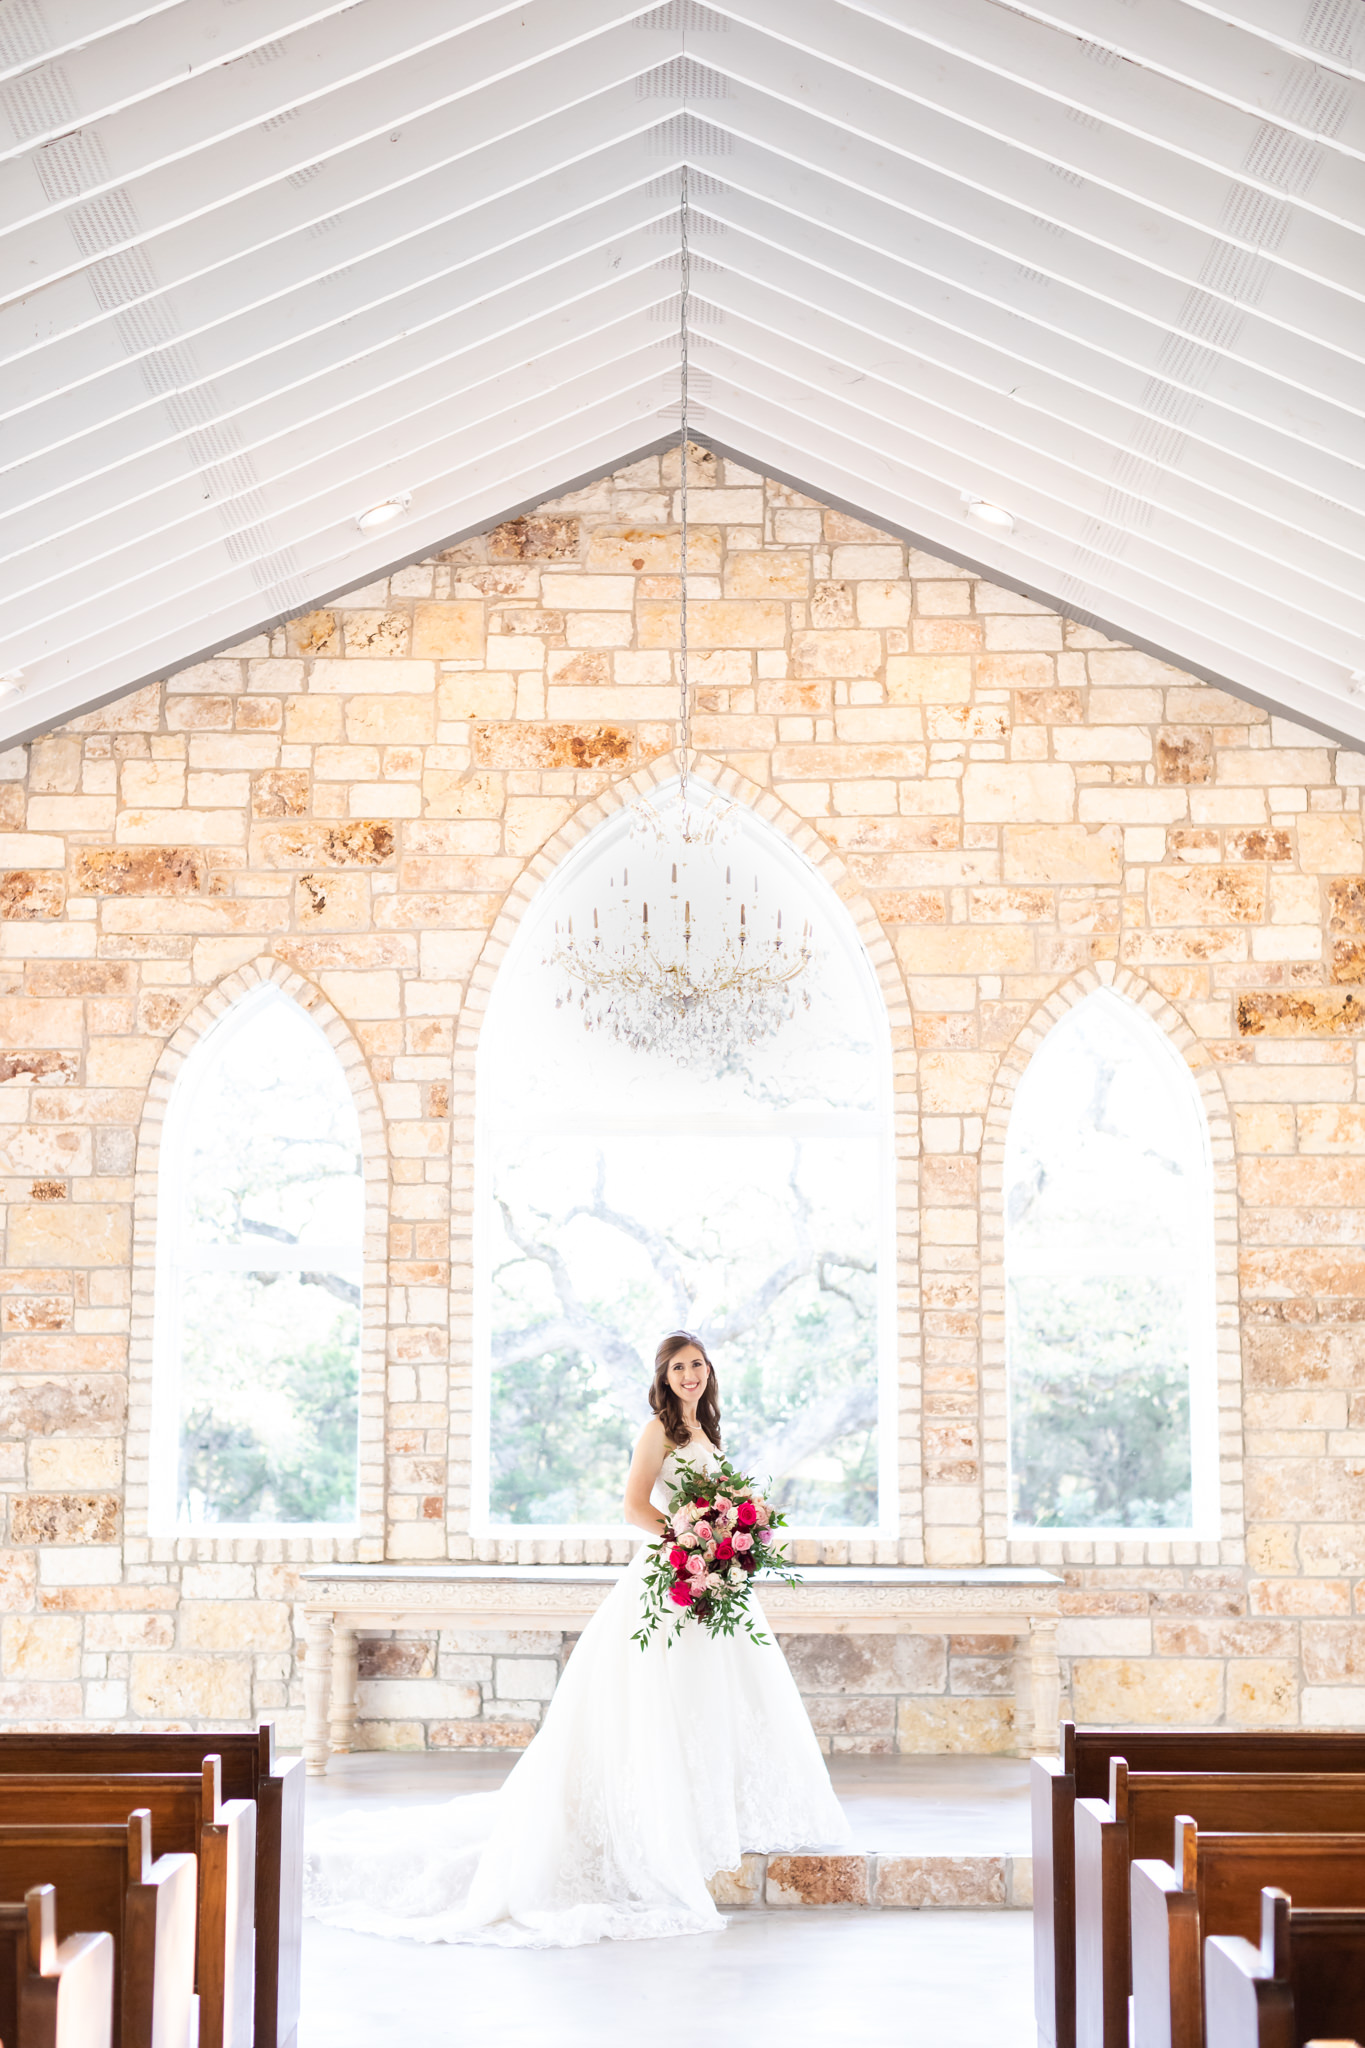 A Classic Bridal Session at Chandelier of Gruene in New Braunfels, TX by Dawn Elizabeth Studios, New Braunfels Wedding Photographer